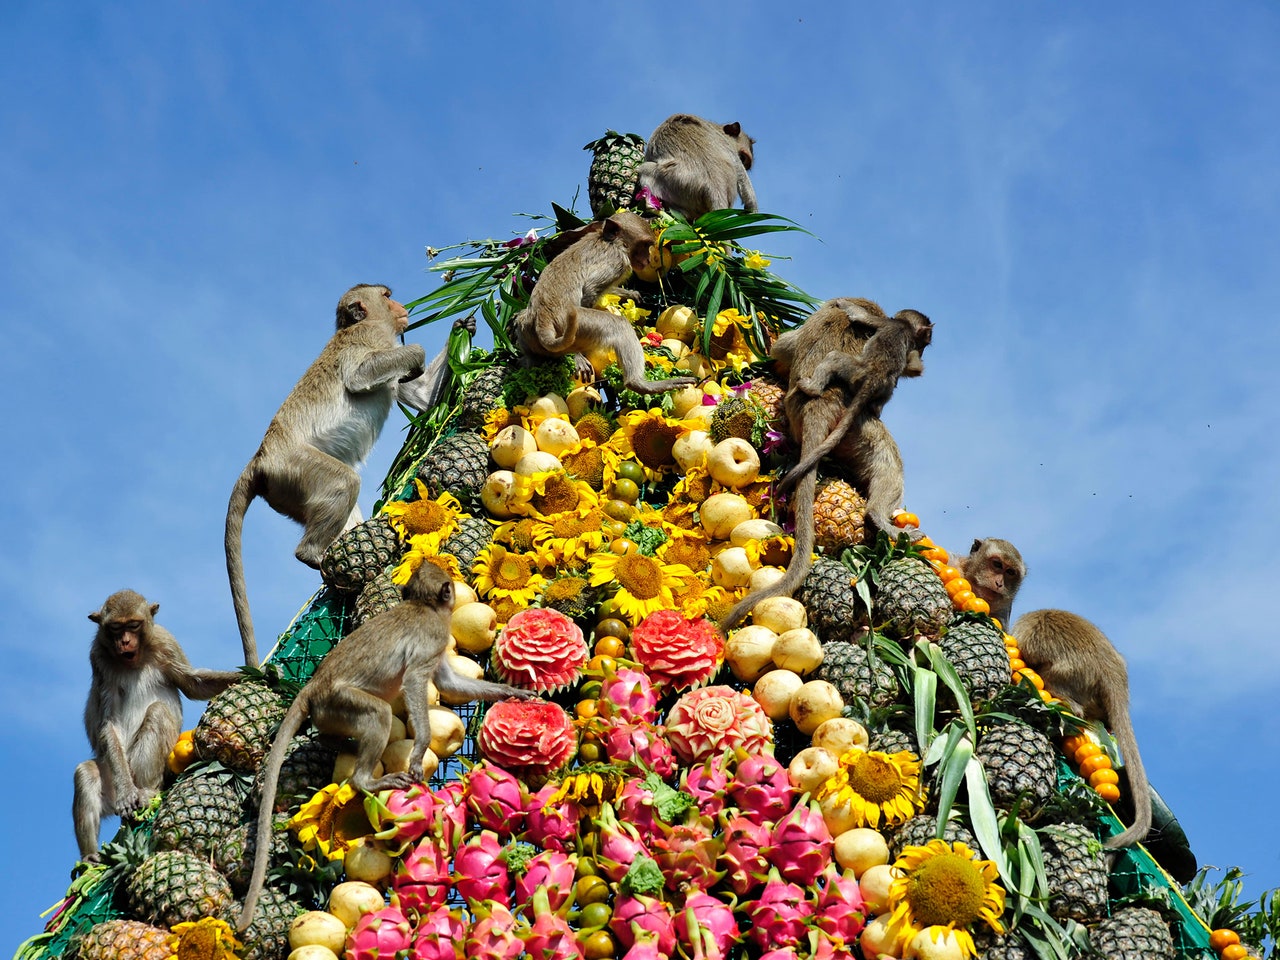 Lopburi Monkey Banquet, Thailand